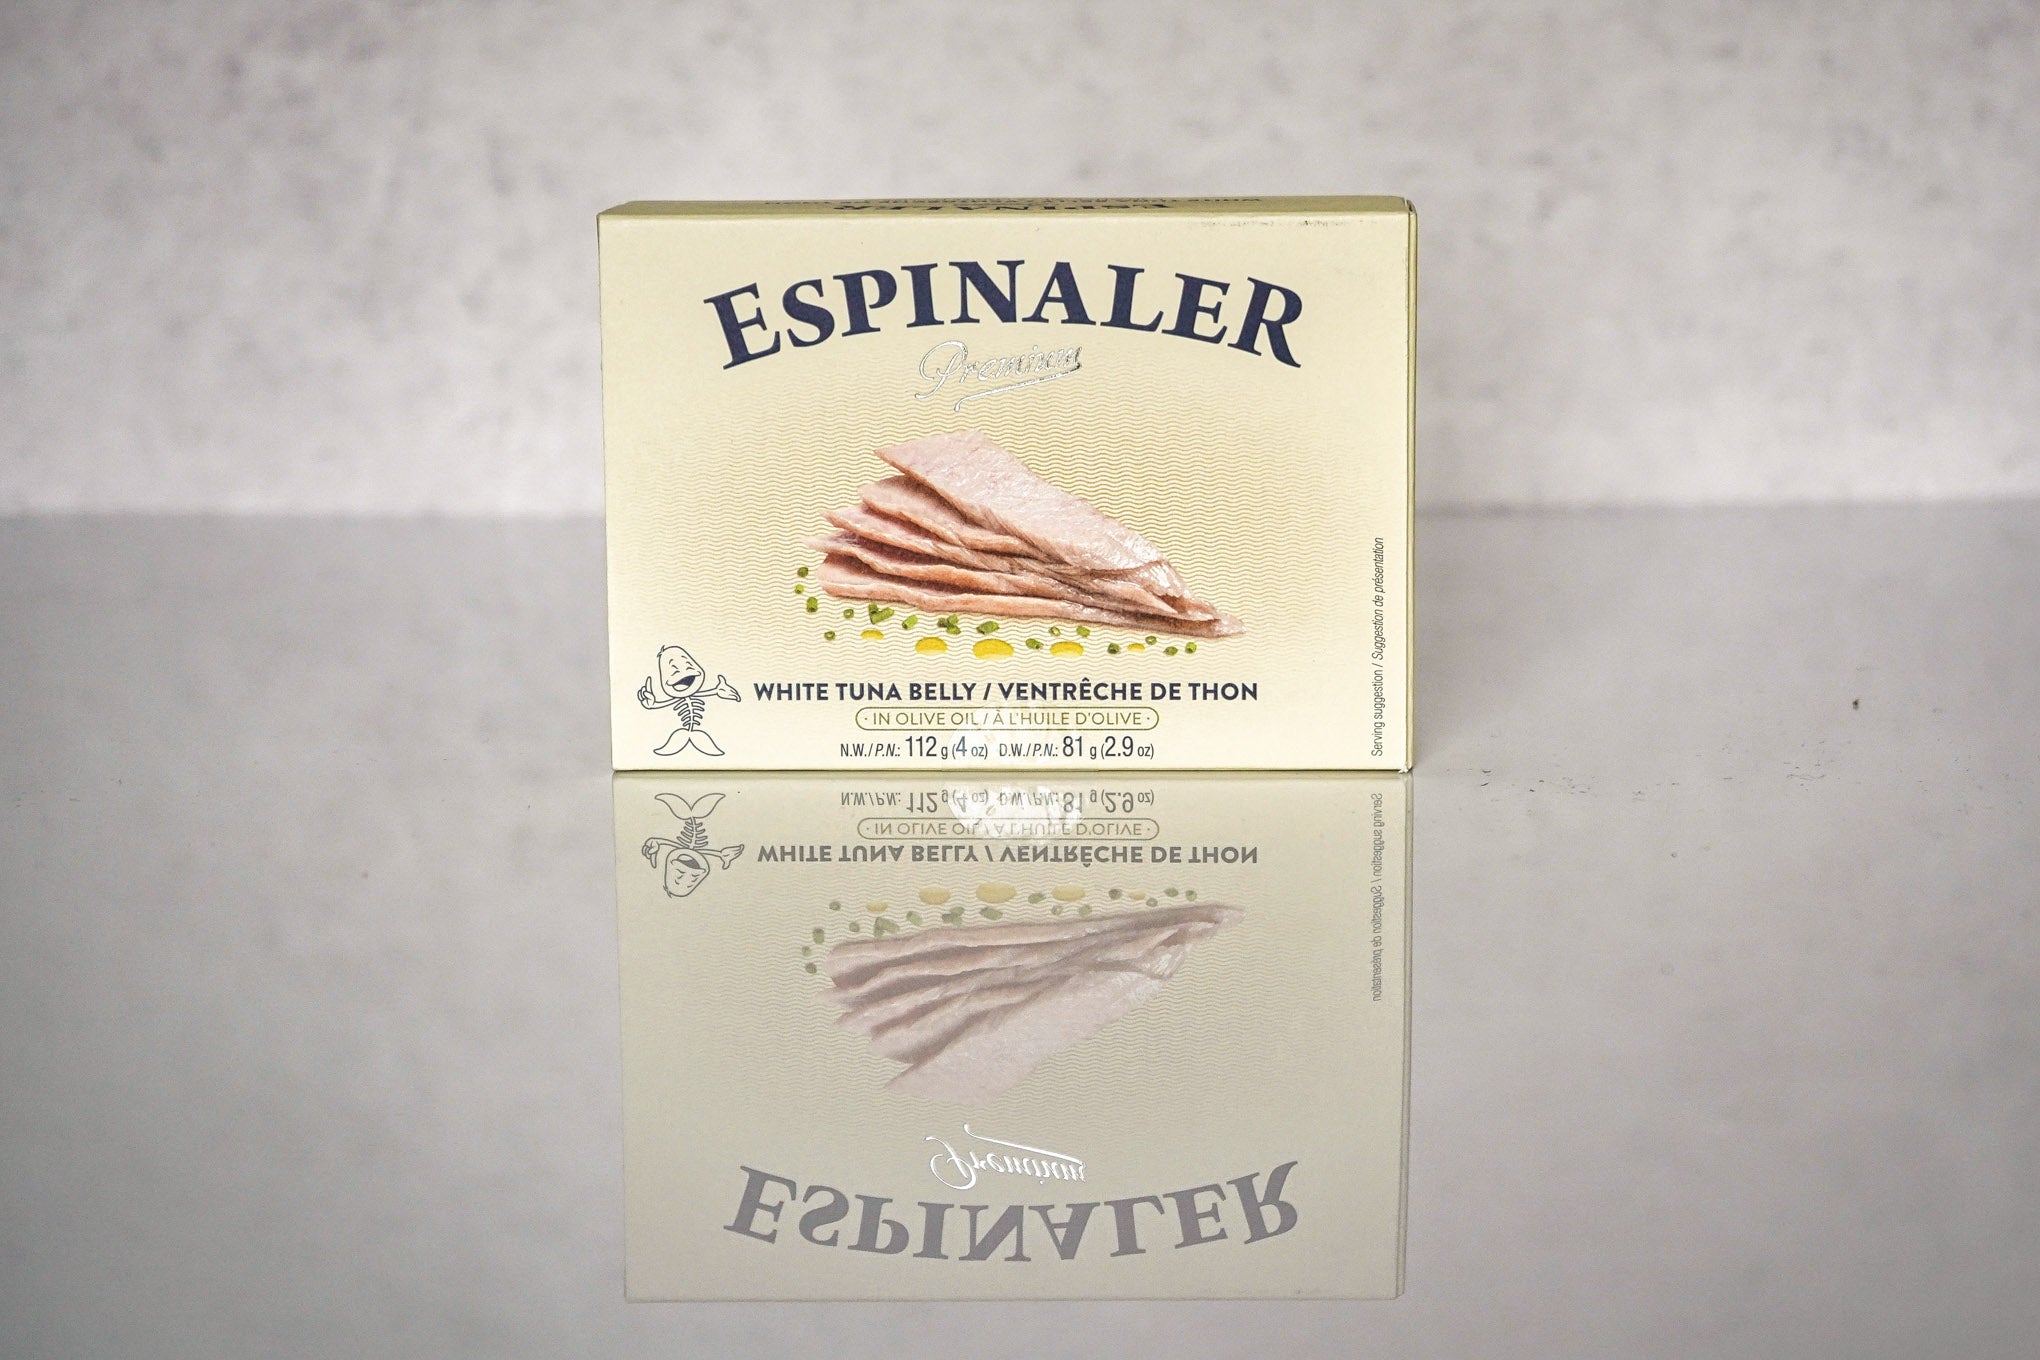 box of espinaler premium white tuna belly